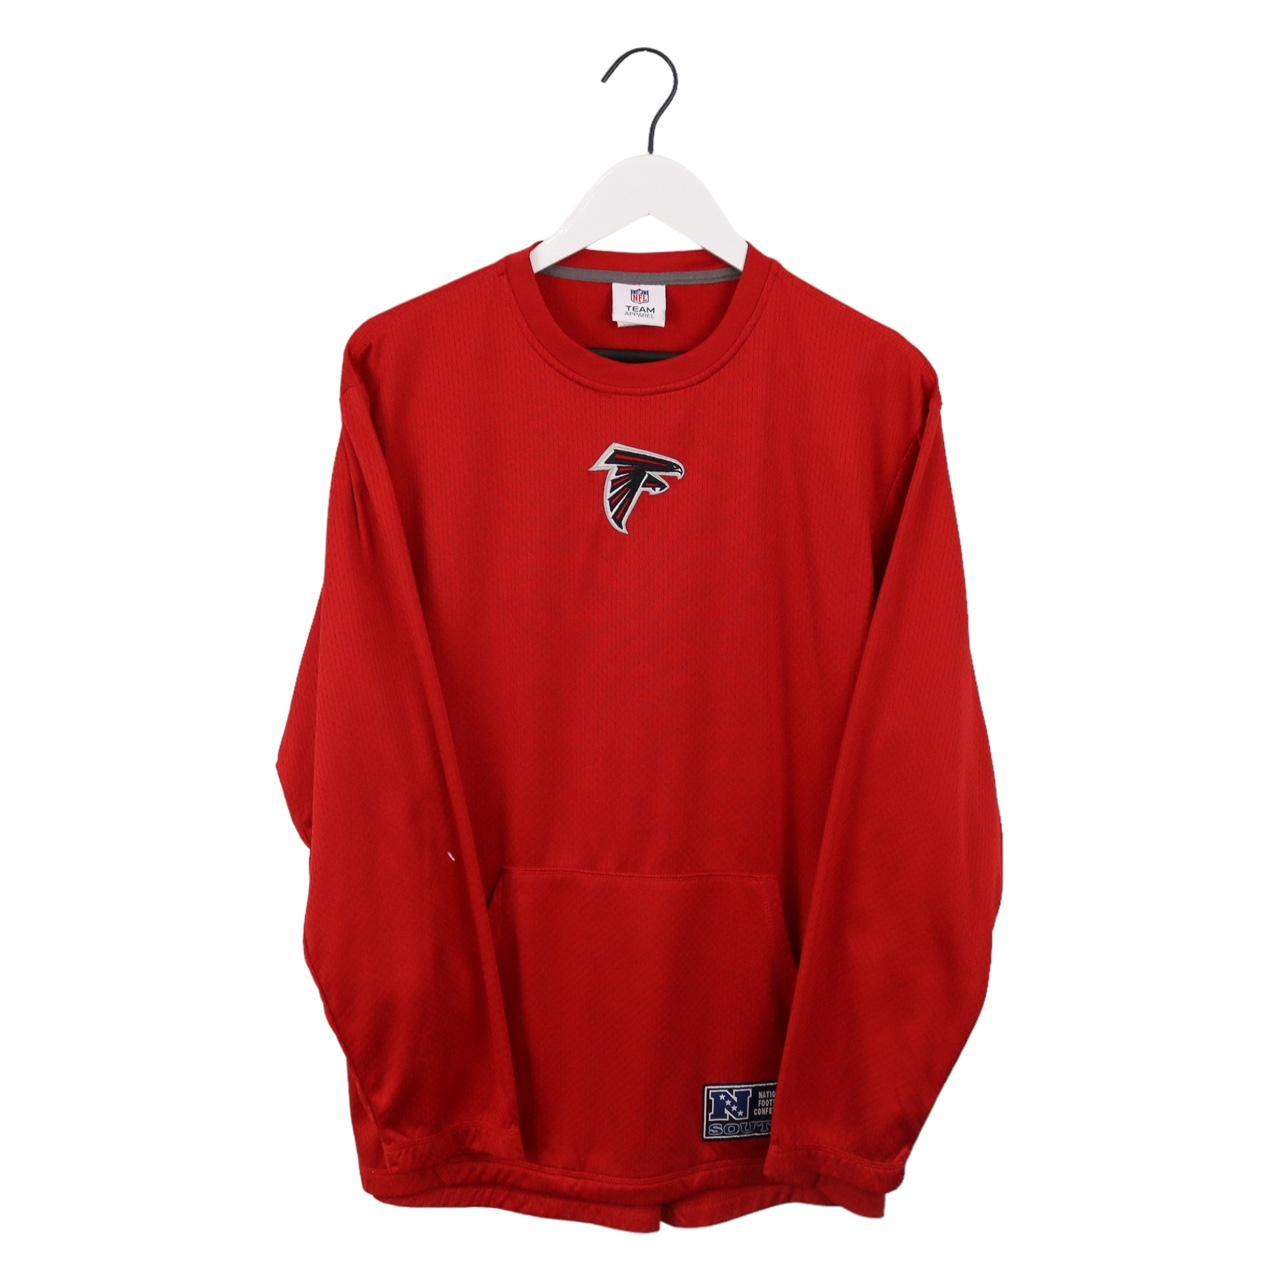 NFL Men's Sweatshirt - Red - M